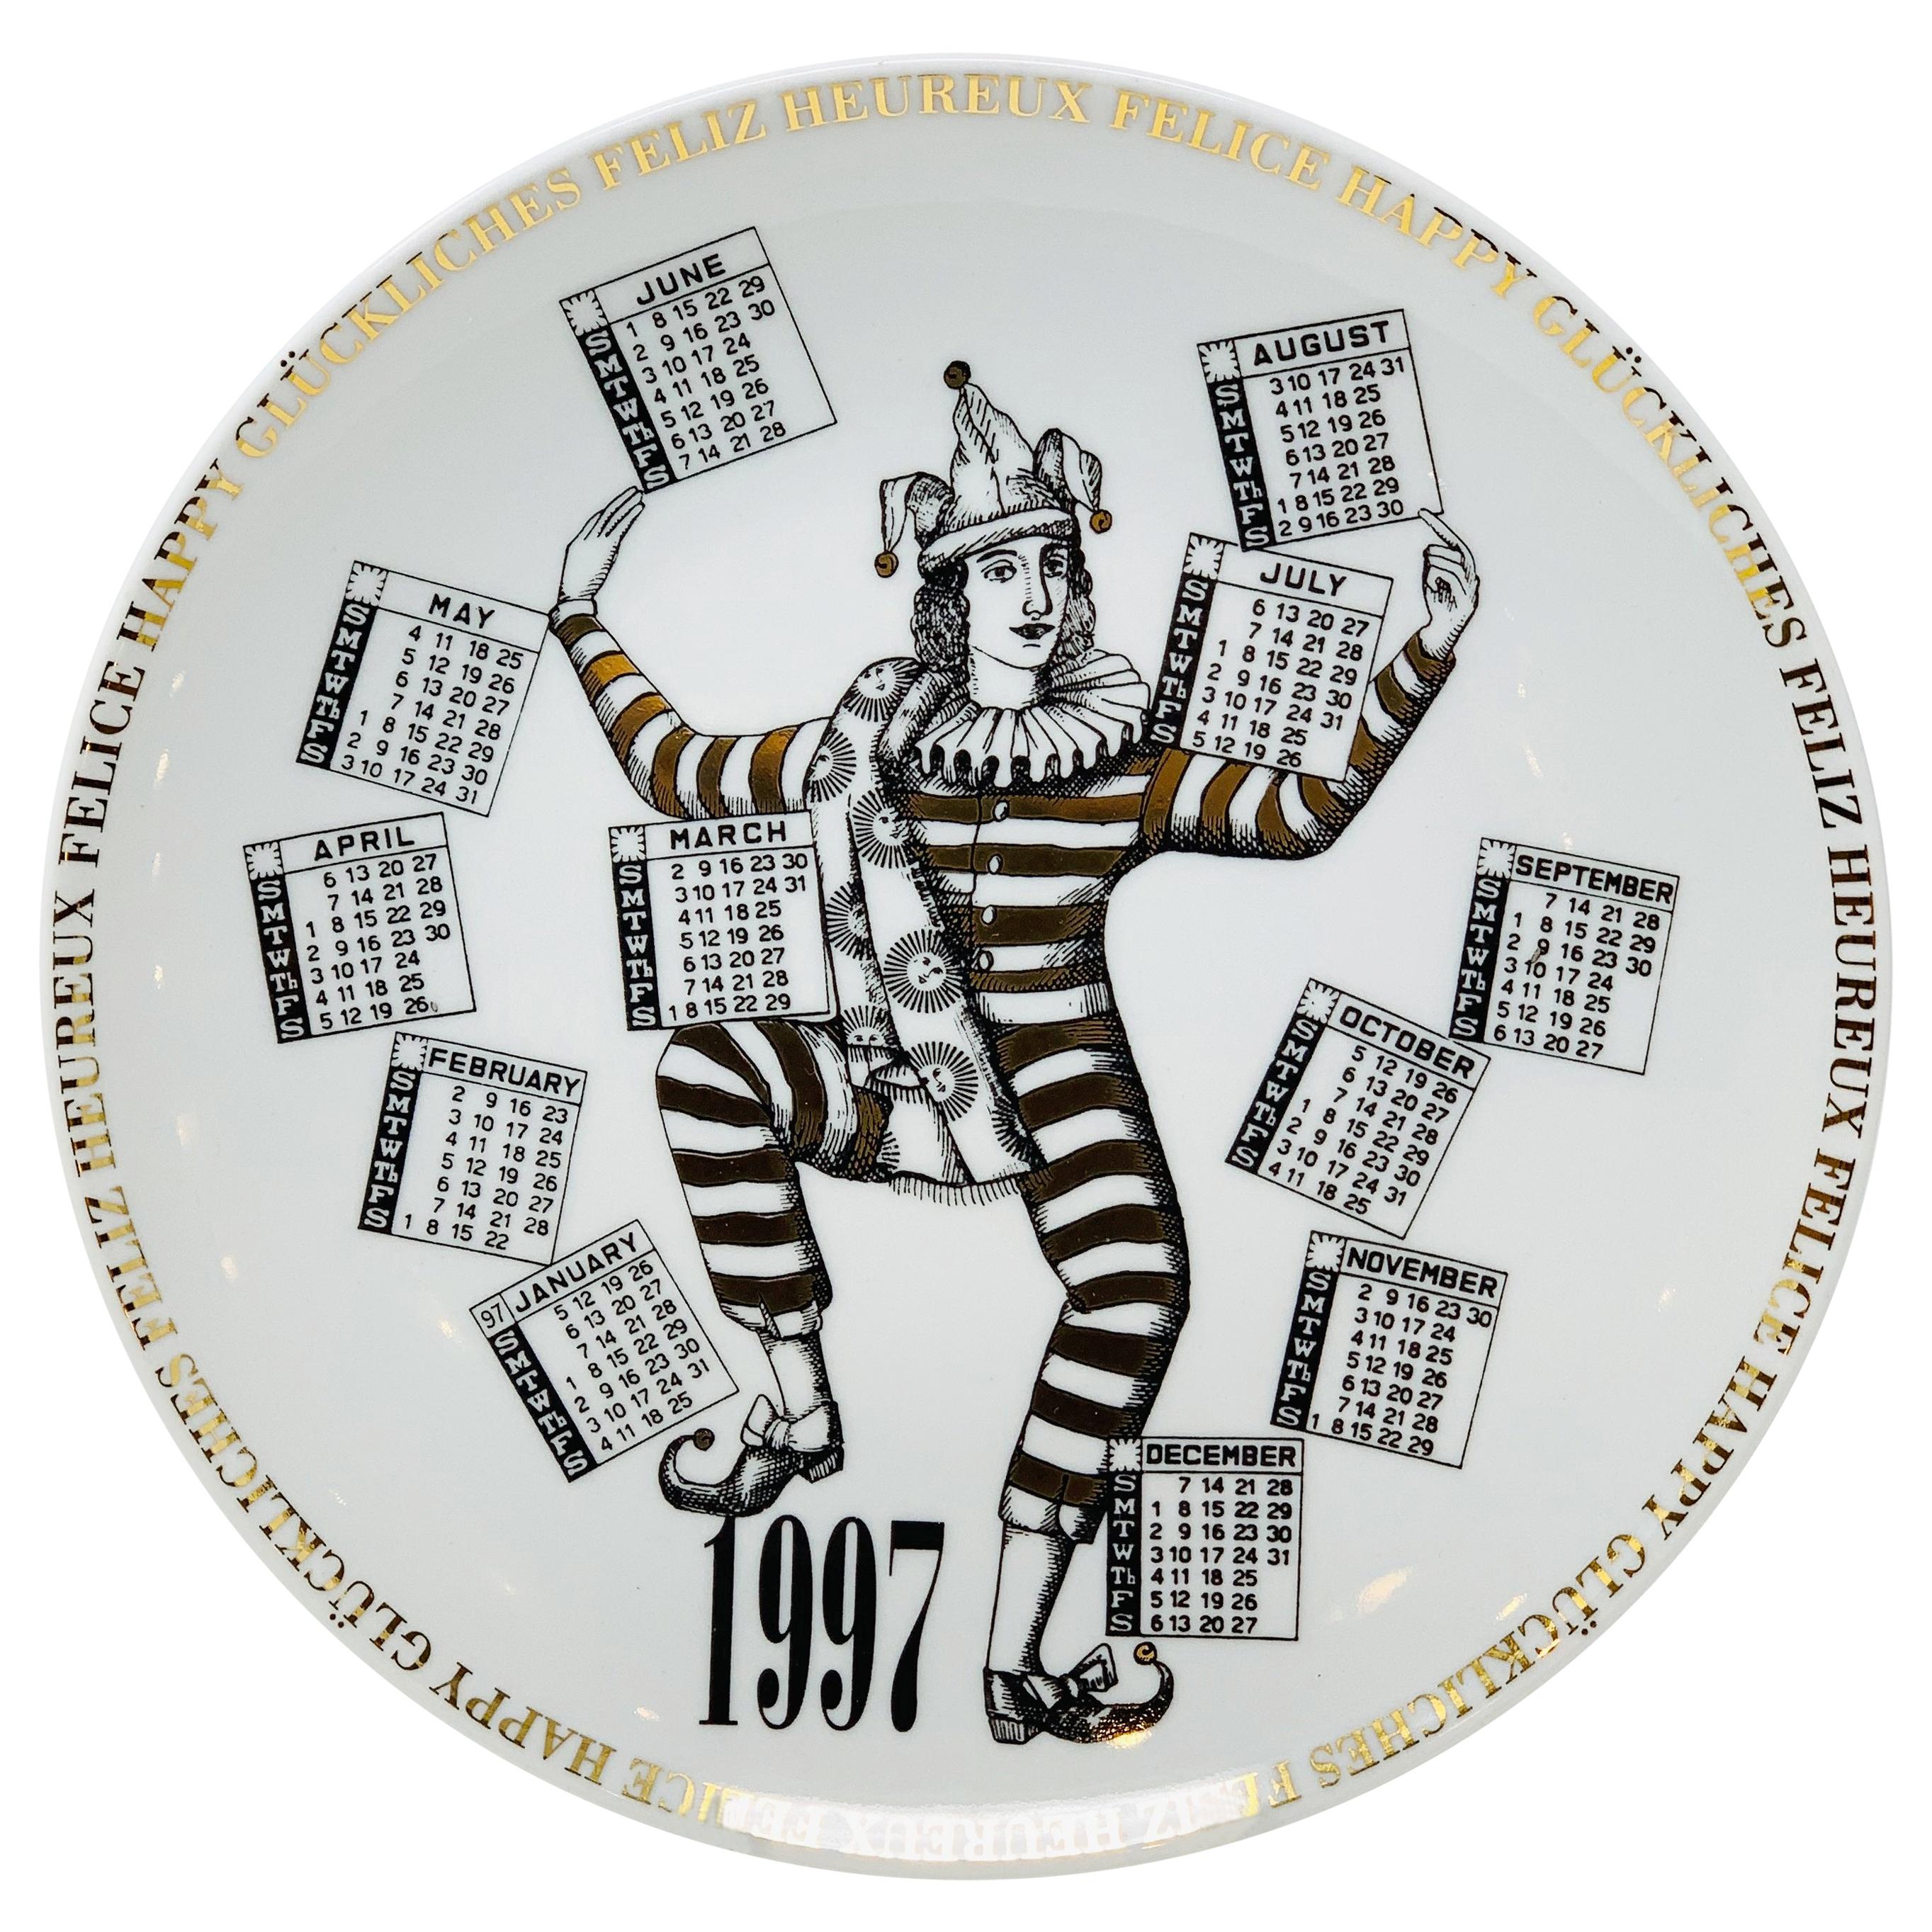 Assiette en porcelaine avec calendrier de Piero Fornasetti pour l'année 1997